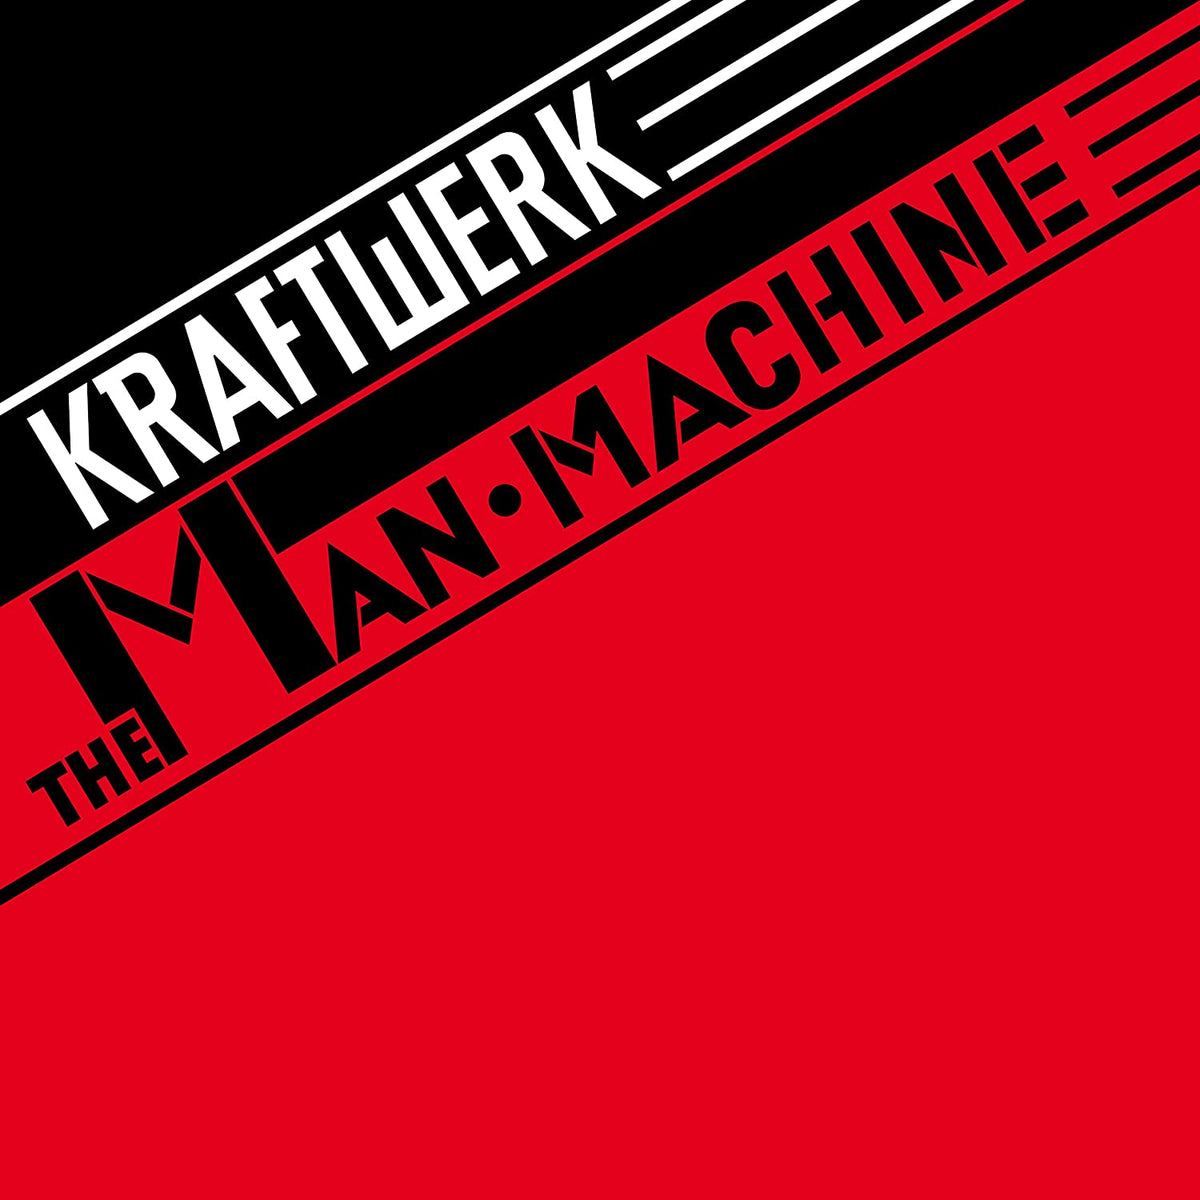 Kraftwerk – The Man Machine LP (180g, Remastered, Booklet)